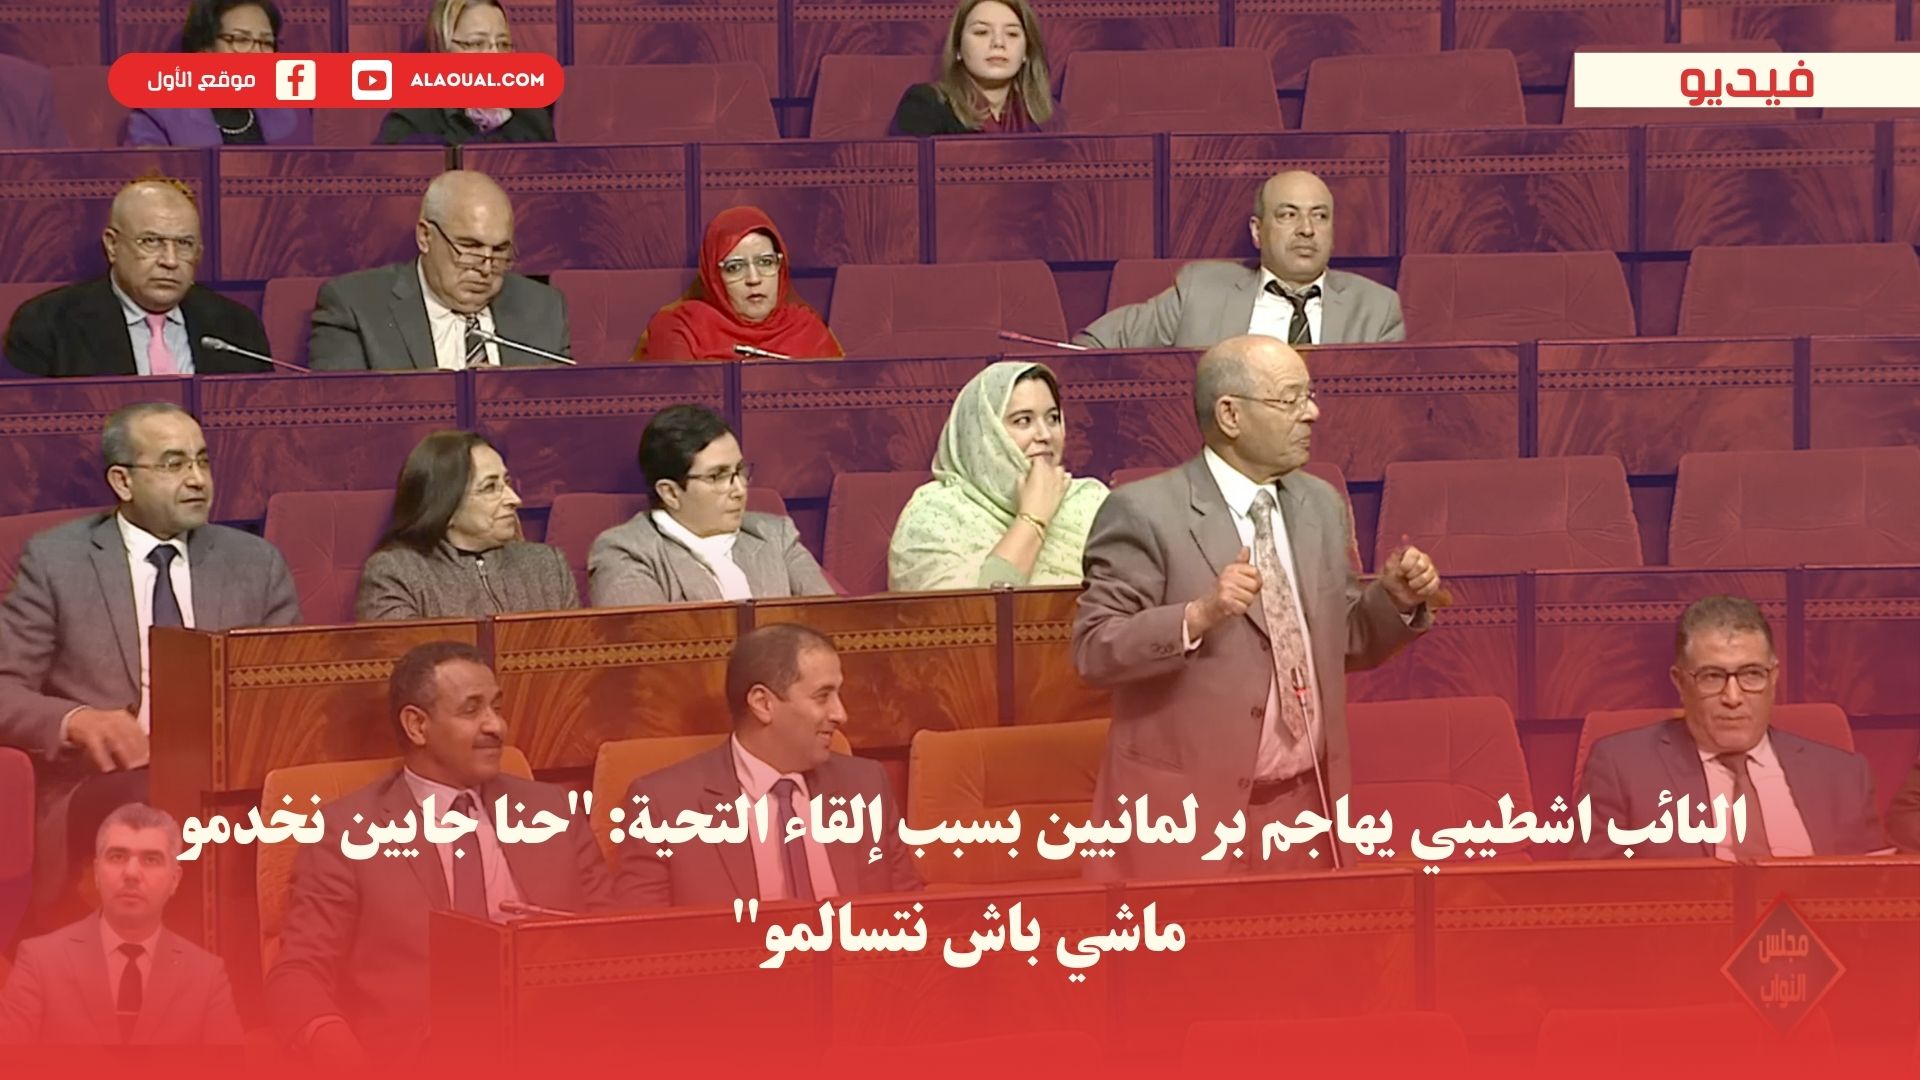 النائب اشطيبي يهاجم برلمانيين بسبب إلقاء التحية: "حنا جايين نخدمو ماشي باش نتسالمو"